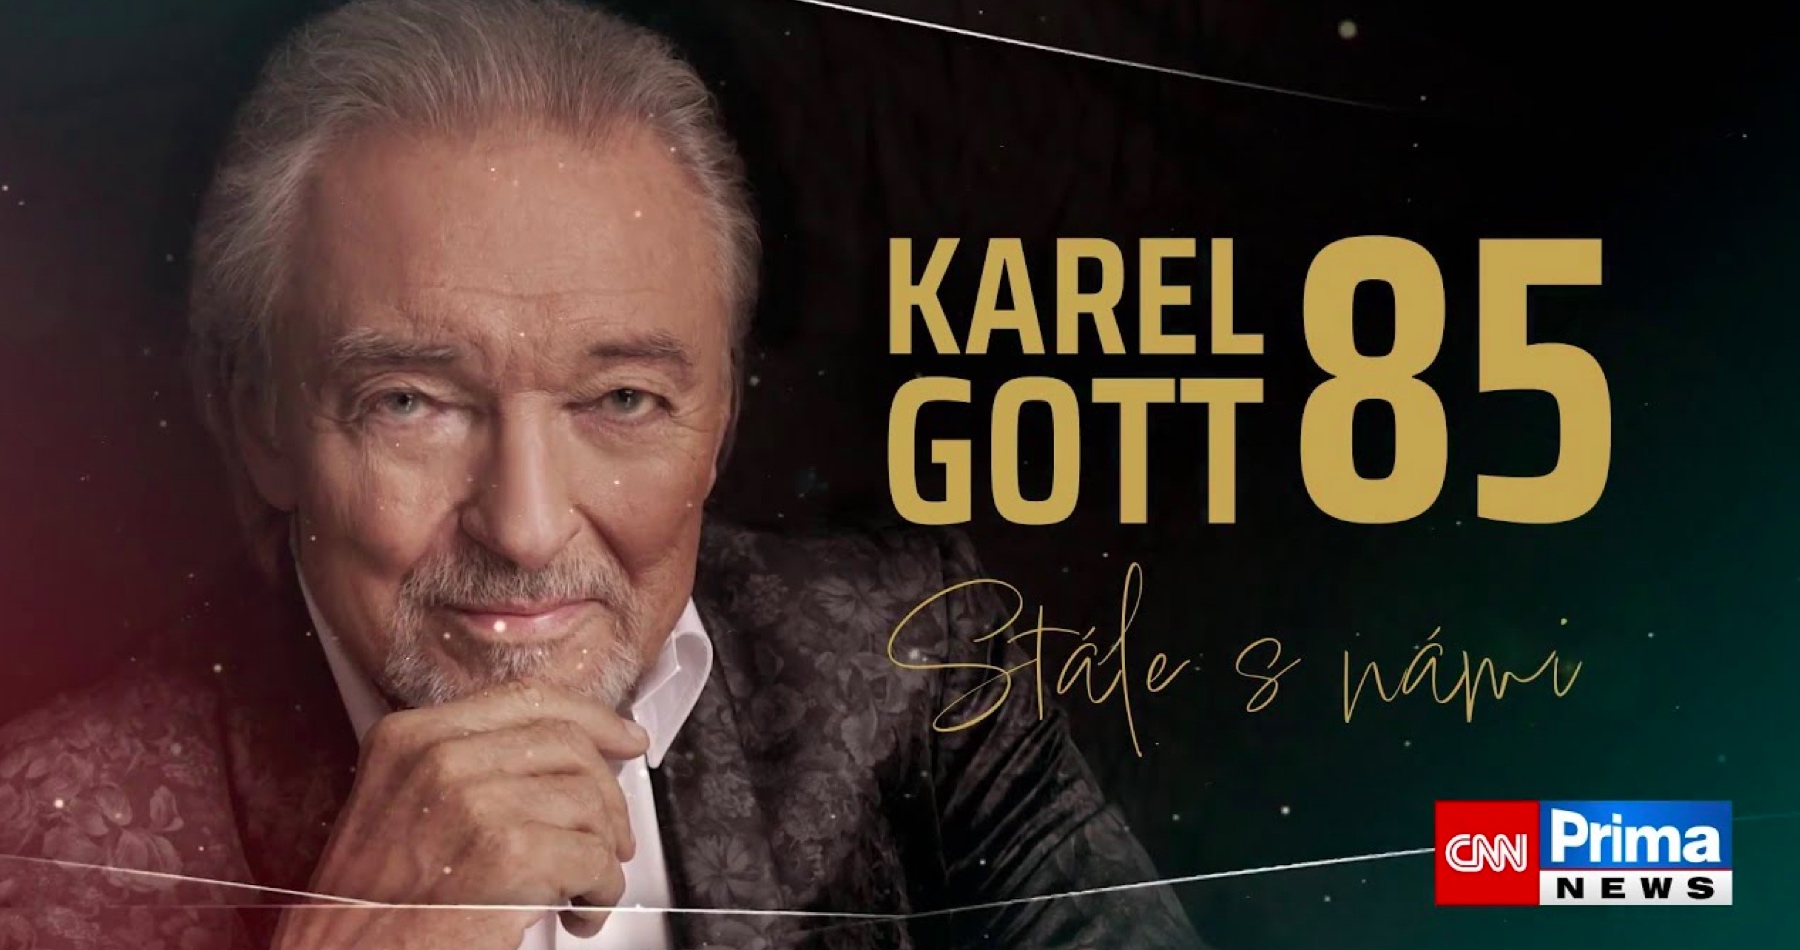 VIDEO: Karel Gott 85 (špeciálna relácia pri príležitosti nedožitých narodenín jedného z najvýznamnejších a najpopulárnejších spevákov v dejinách česko-slovenskej populárnej hudby)